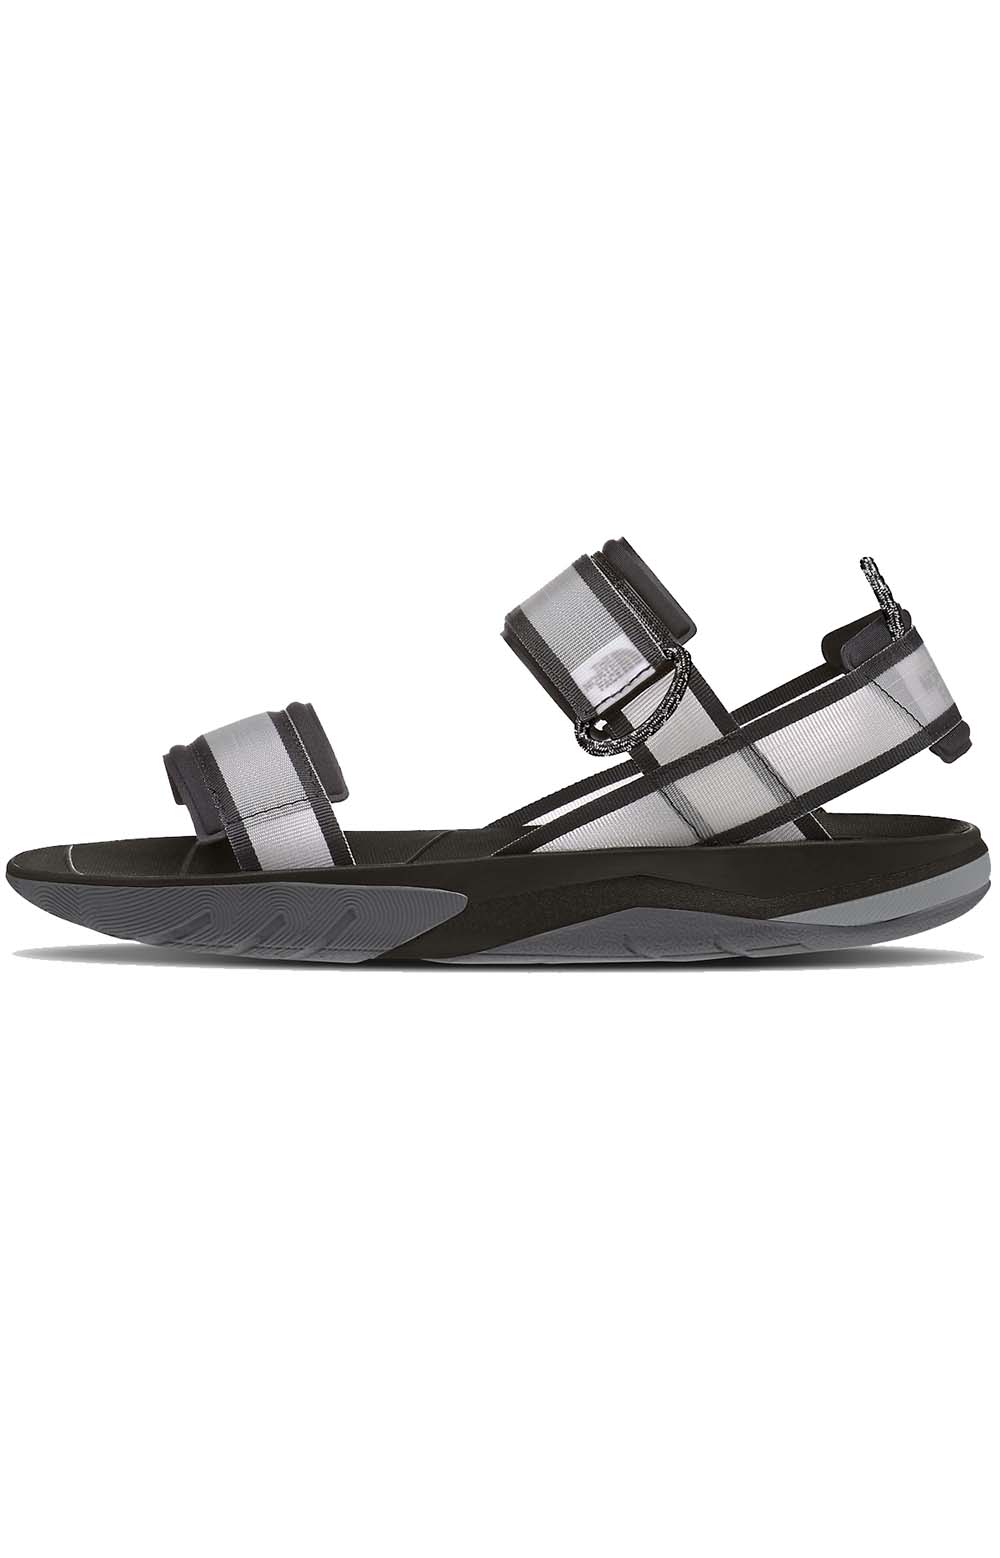 (NF0A5JC6KT0) Skeena Sport Sandals - TNF Black/Asphalt Grey